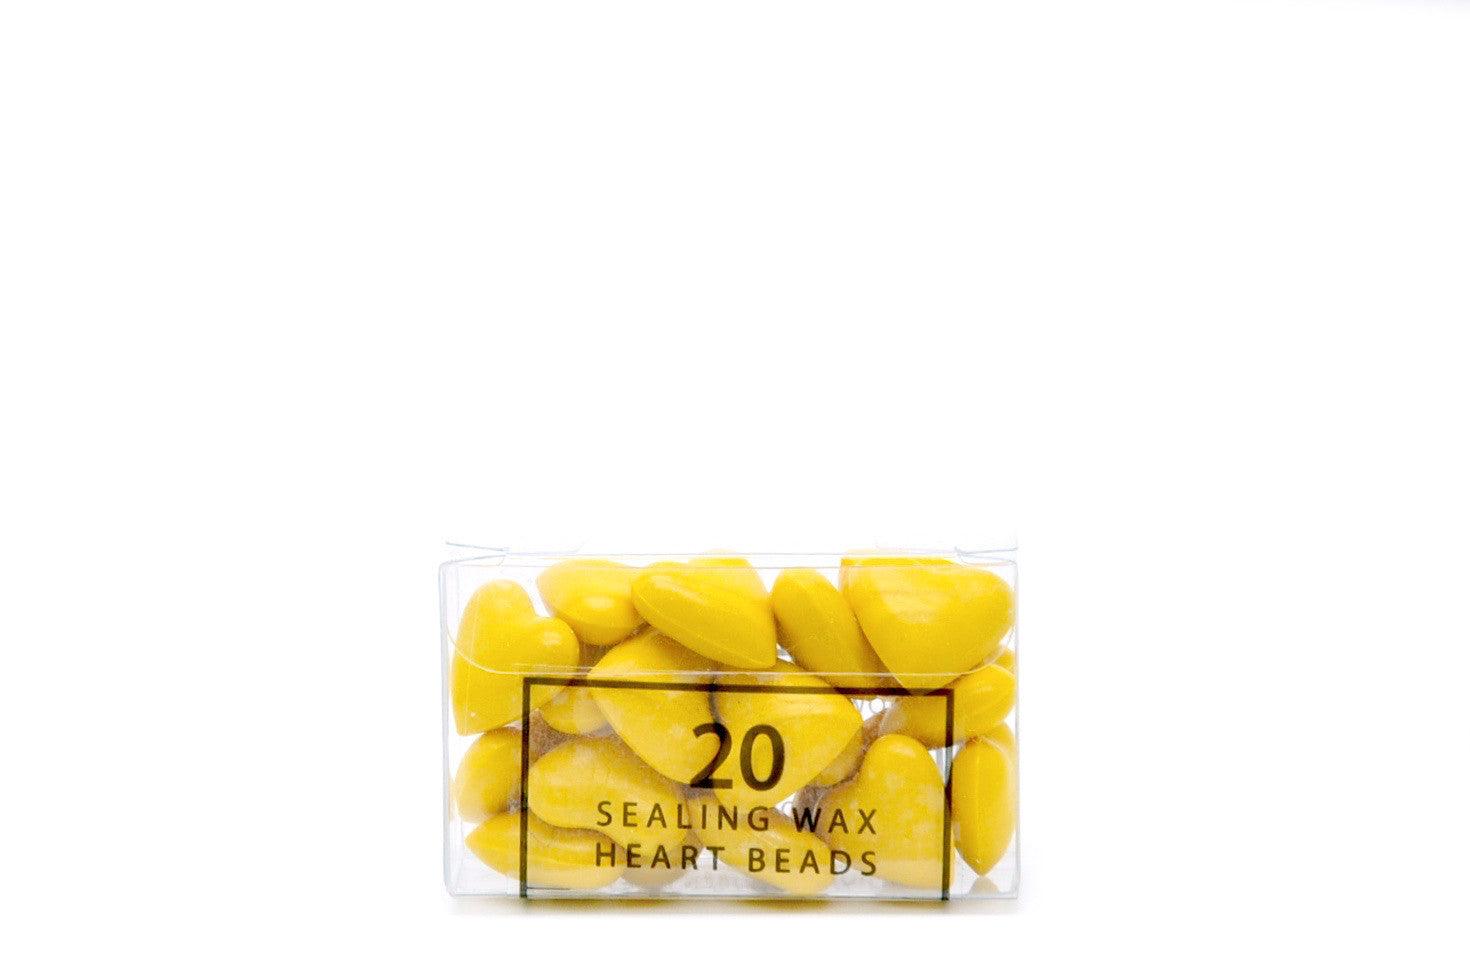 Yellow Sealing Wax Heart Bead - Backtozero B20 - Heart Bead, Heart Wax, sale, Sealing Wax, Wax Bead, Yellow